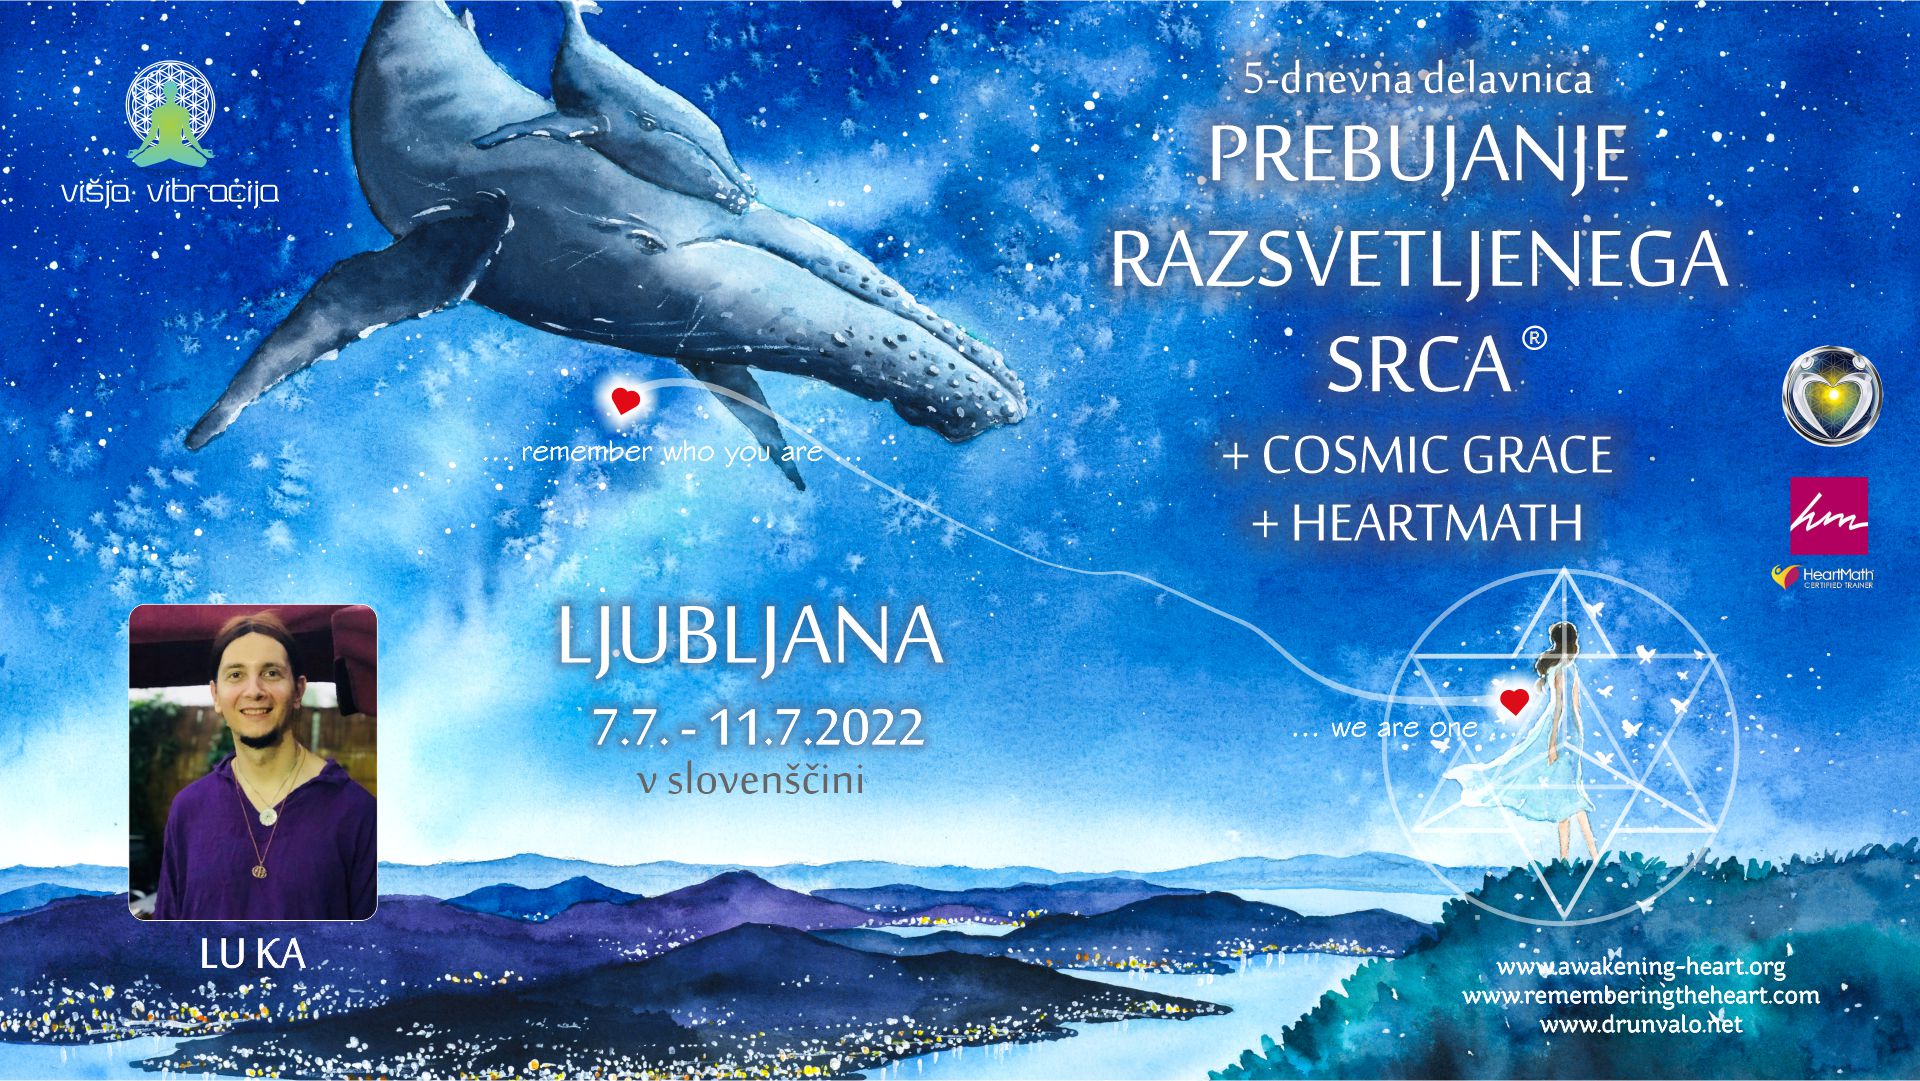 5-dnevna delavnica Prebujanje razsvetljenega srca – Ljubljana 7